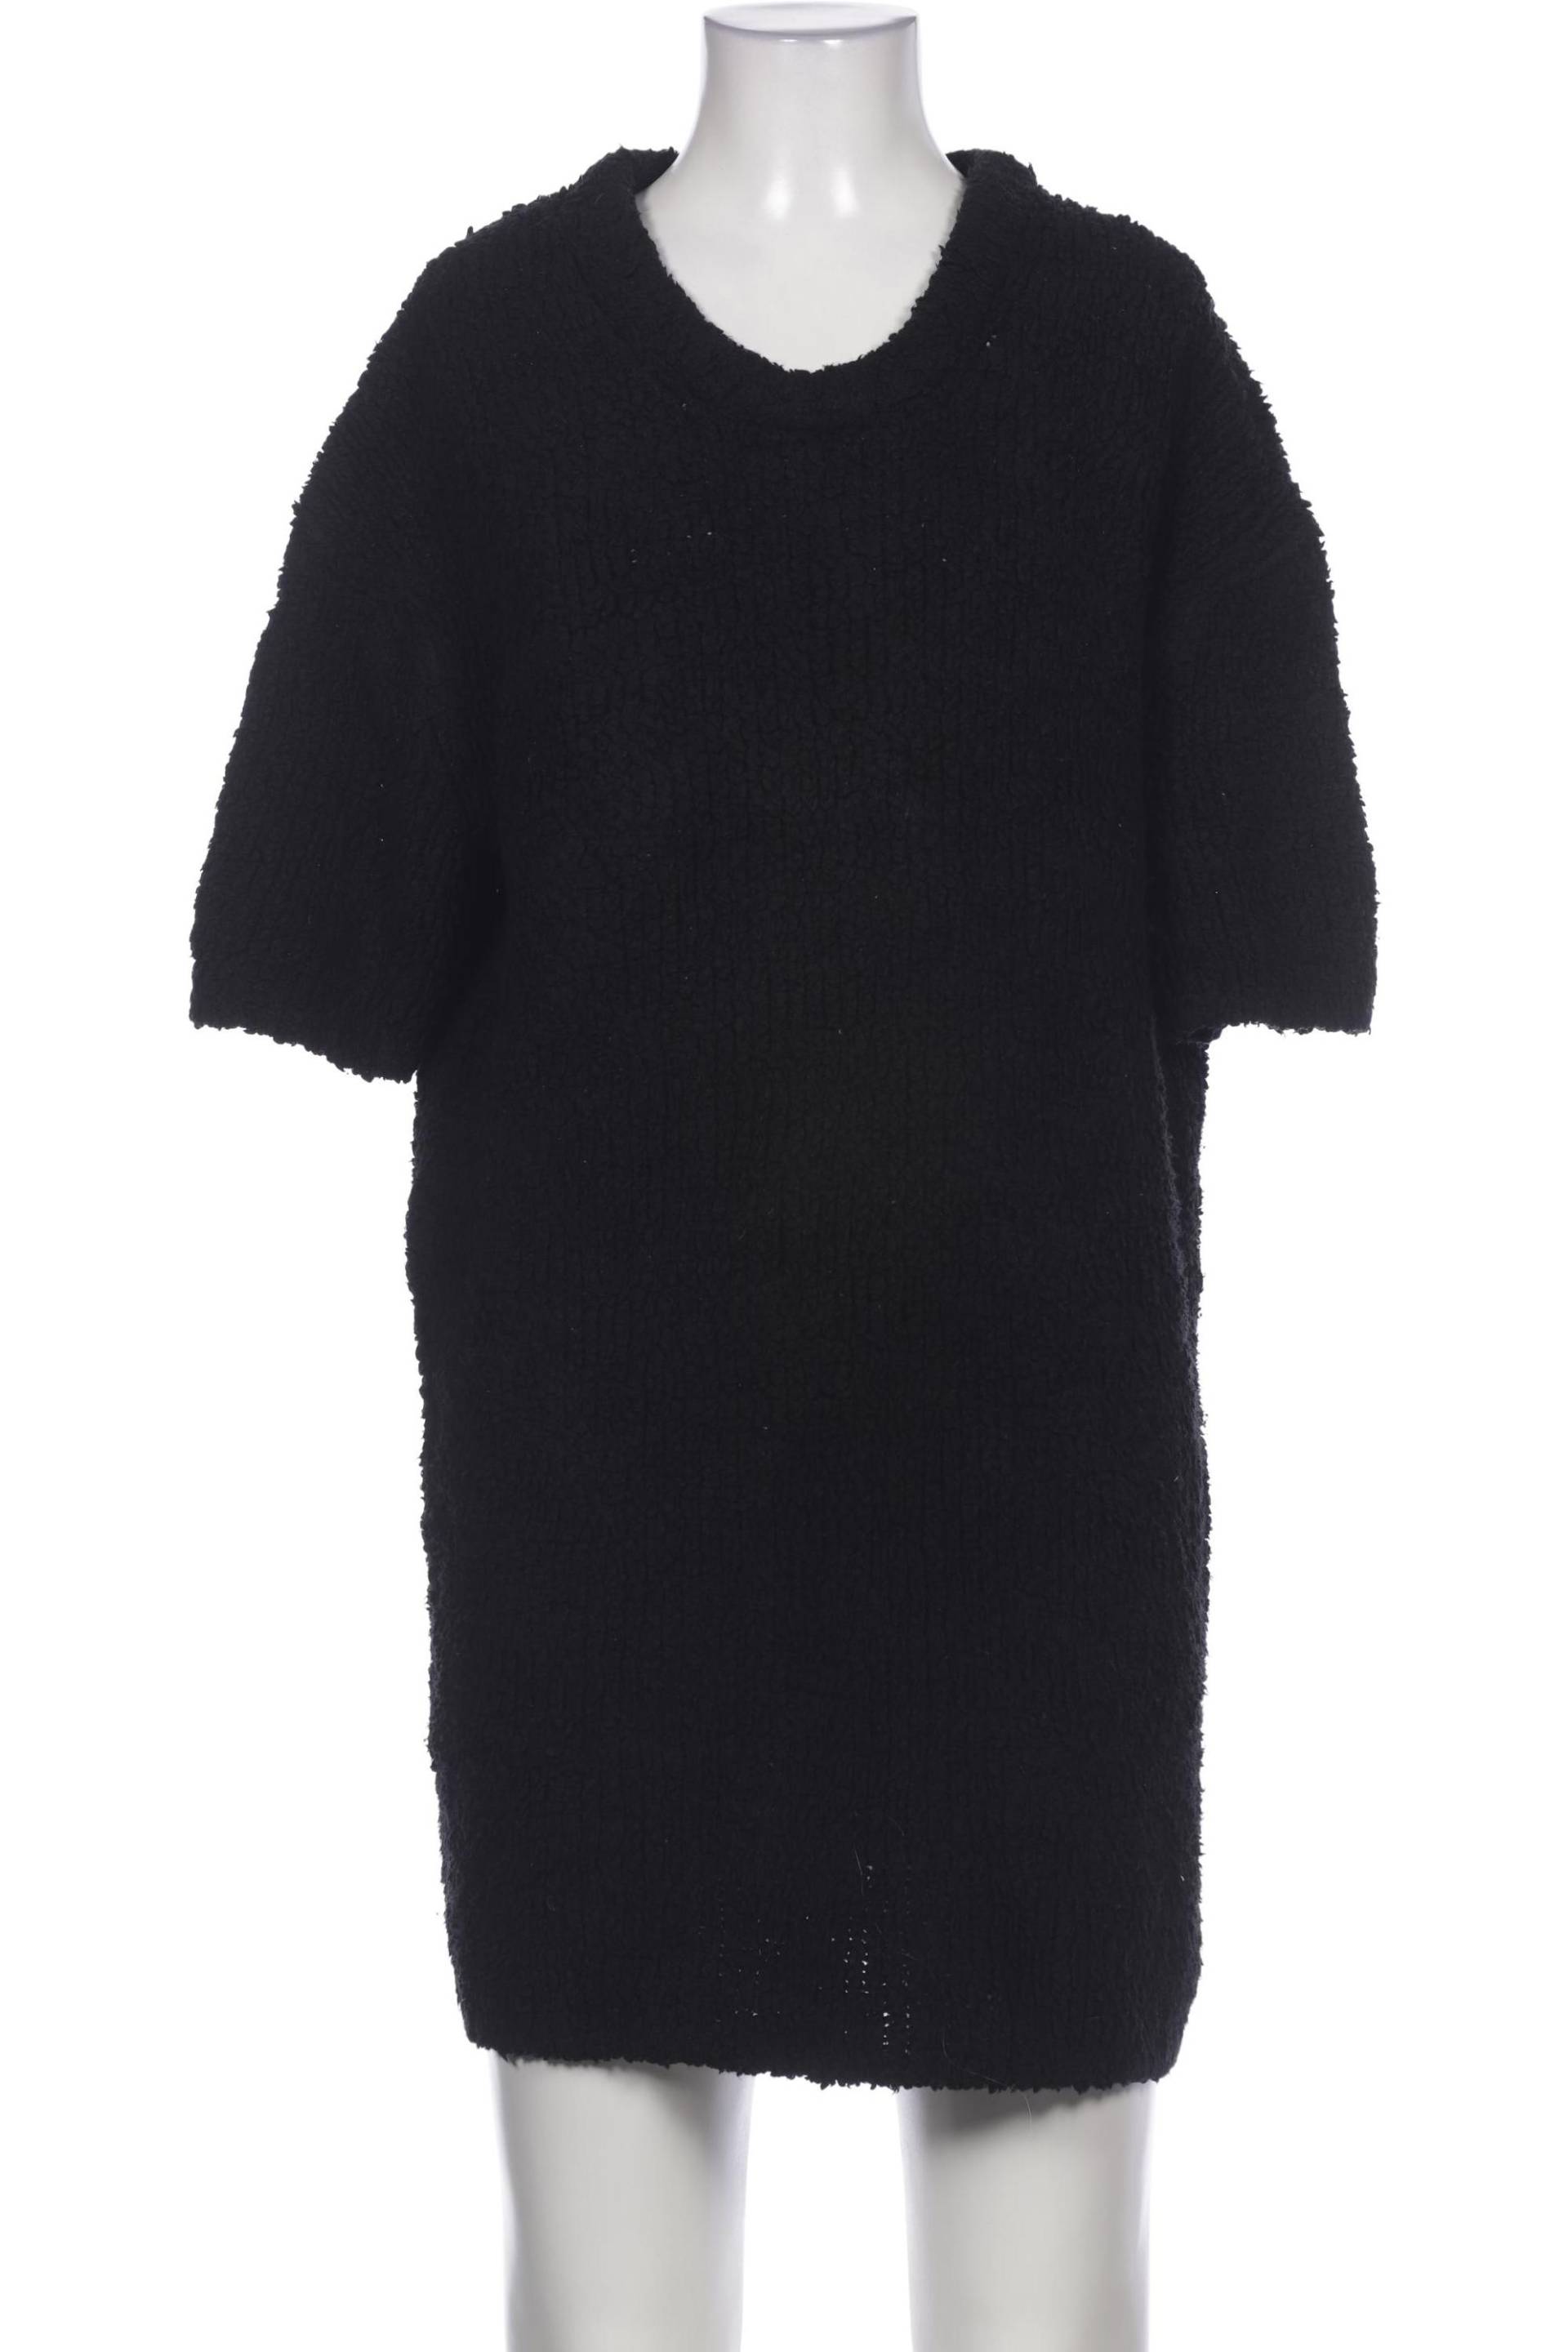 Arket Damen Kleid, schwarz von Arket